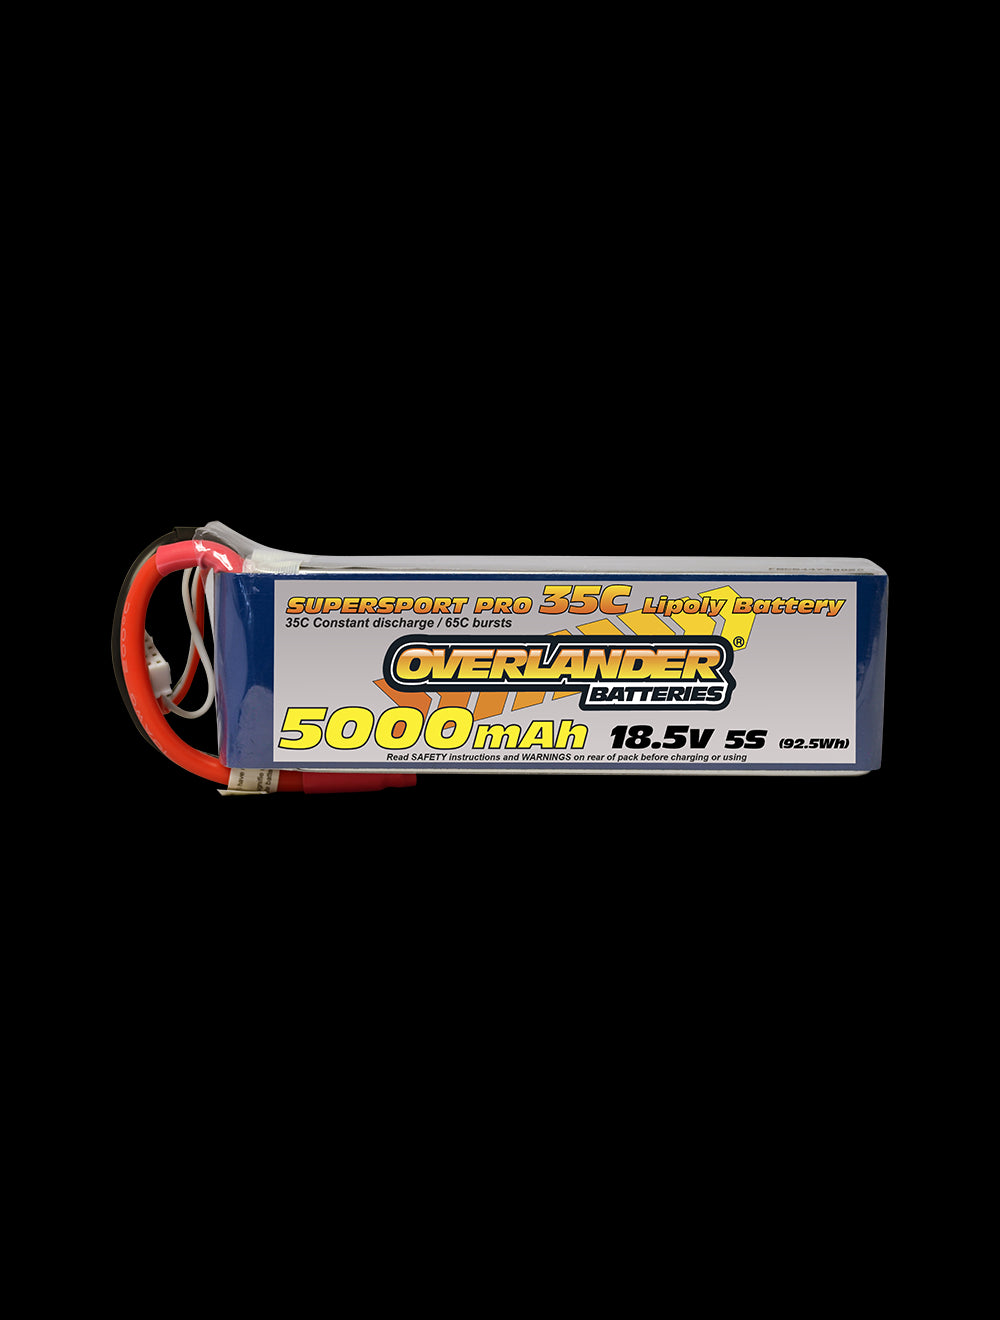 Overlander 5000mAh 18.5V 5S 35C Supersport Pro LiPo Battery - EC3 Connector 2579